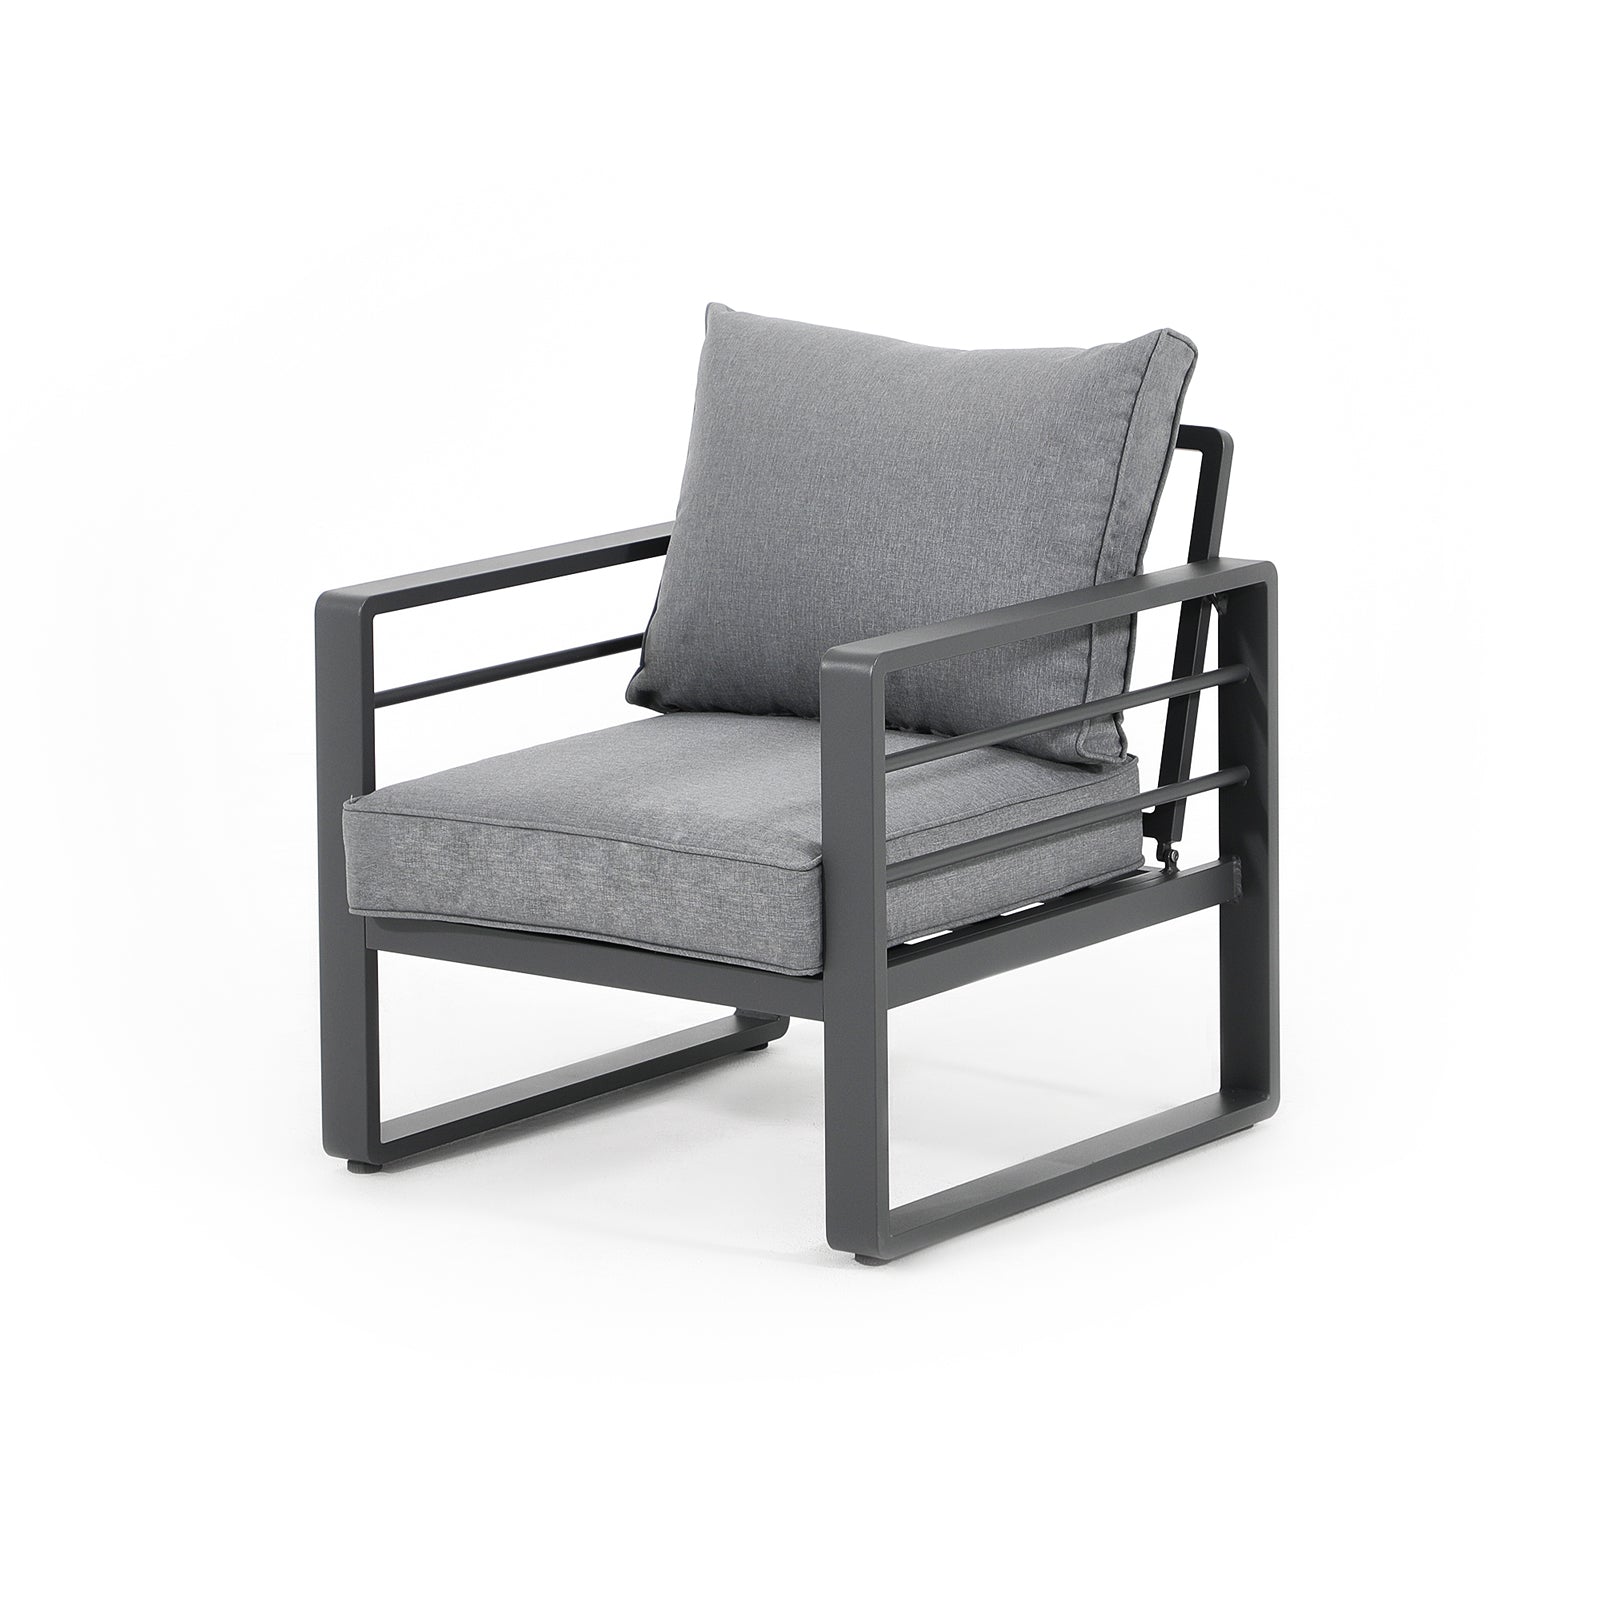 Salina  outdoor lounge Chairs with aluminum frame, grey cushions, left - Jardina Furniture